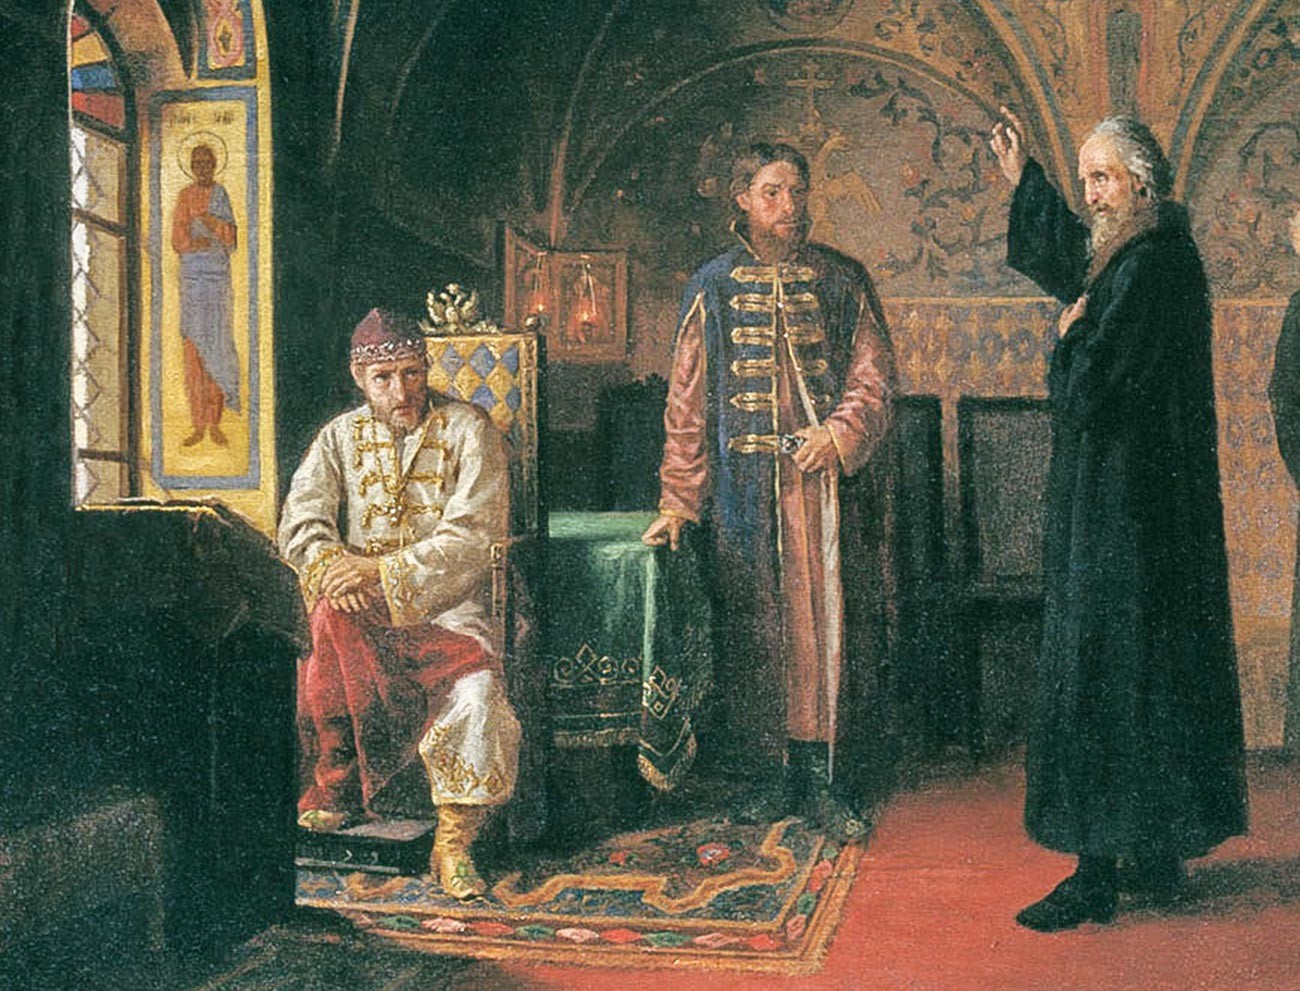 «Митрополит Филипп обличает Ивана Грозного» (1800), художник Яков Турлыгин. Иван Грозный изображен в тафье